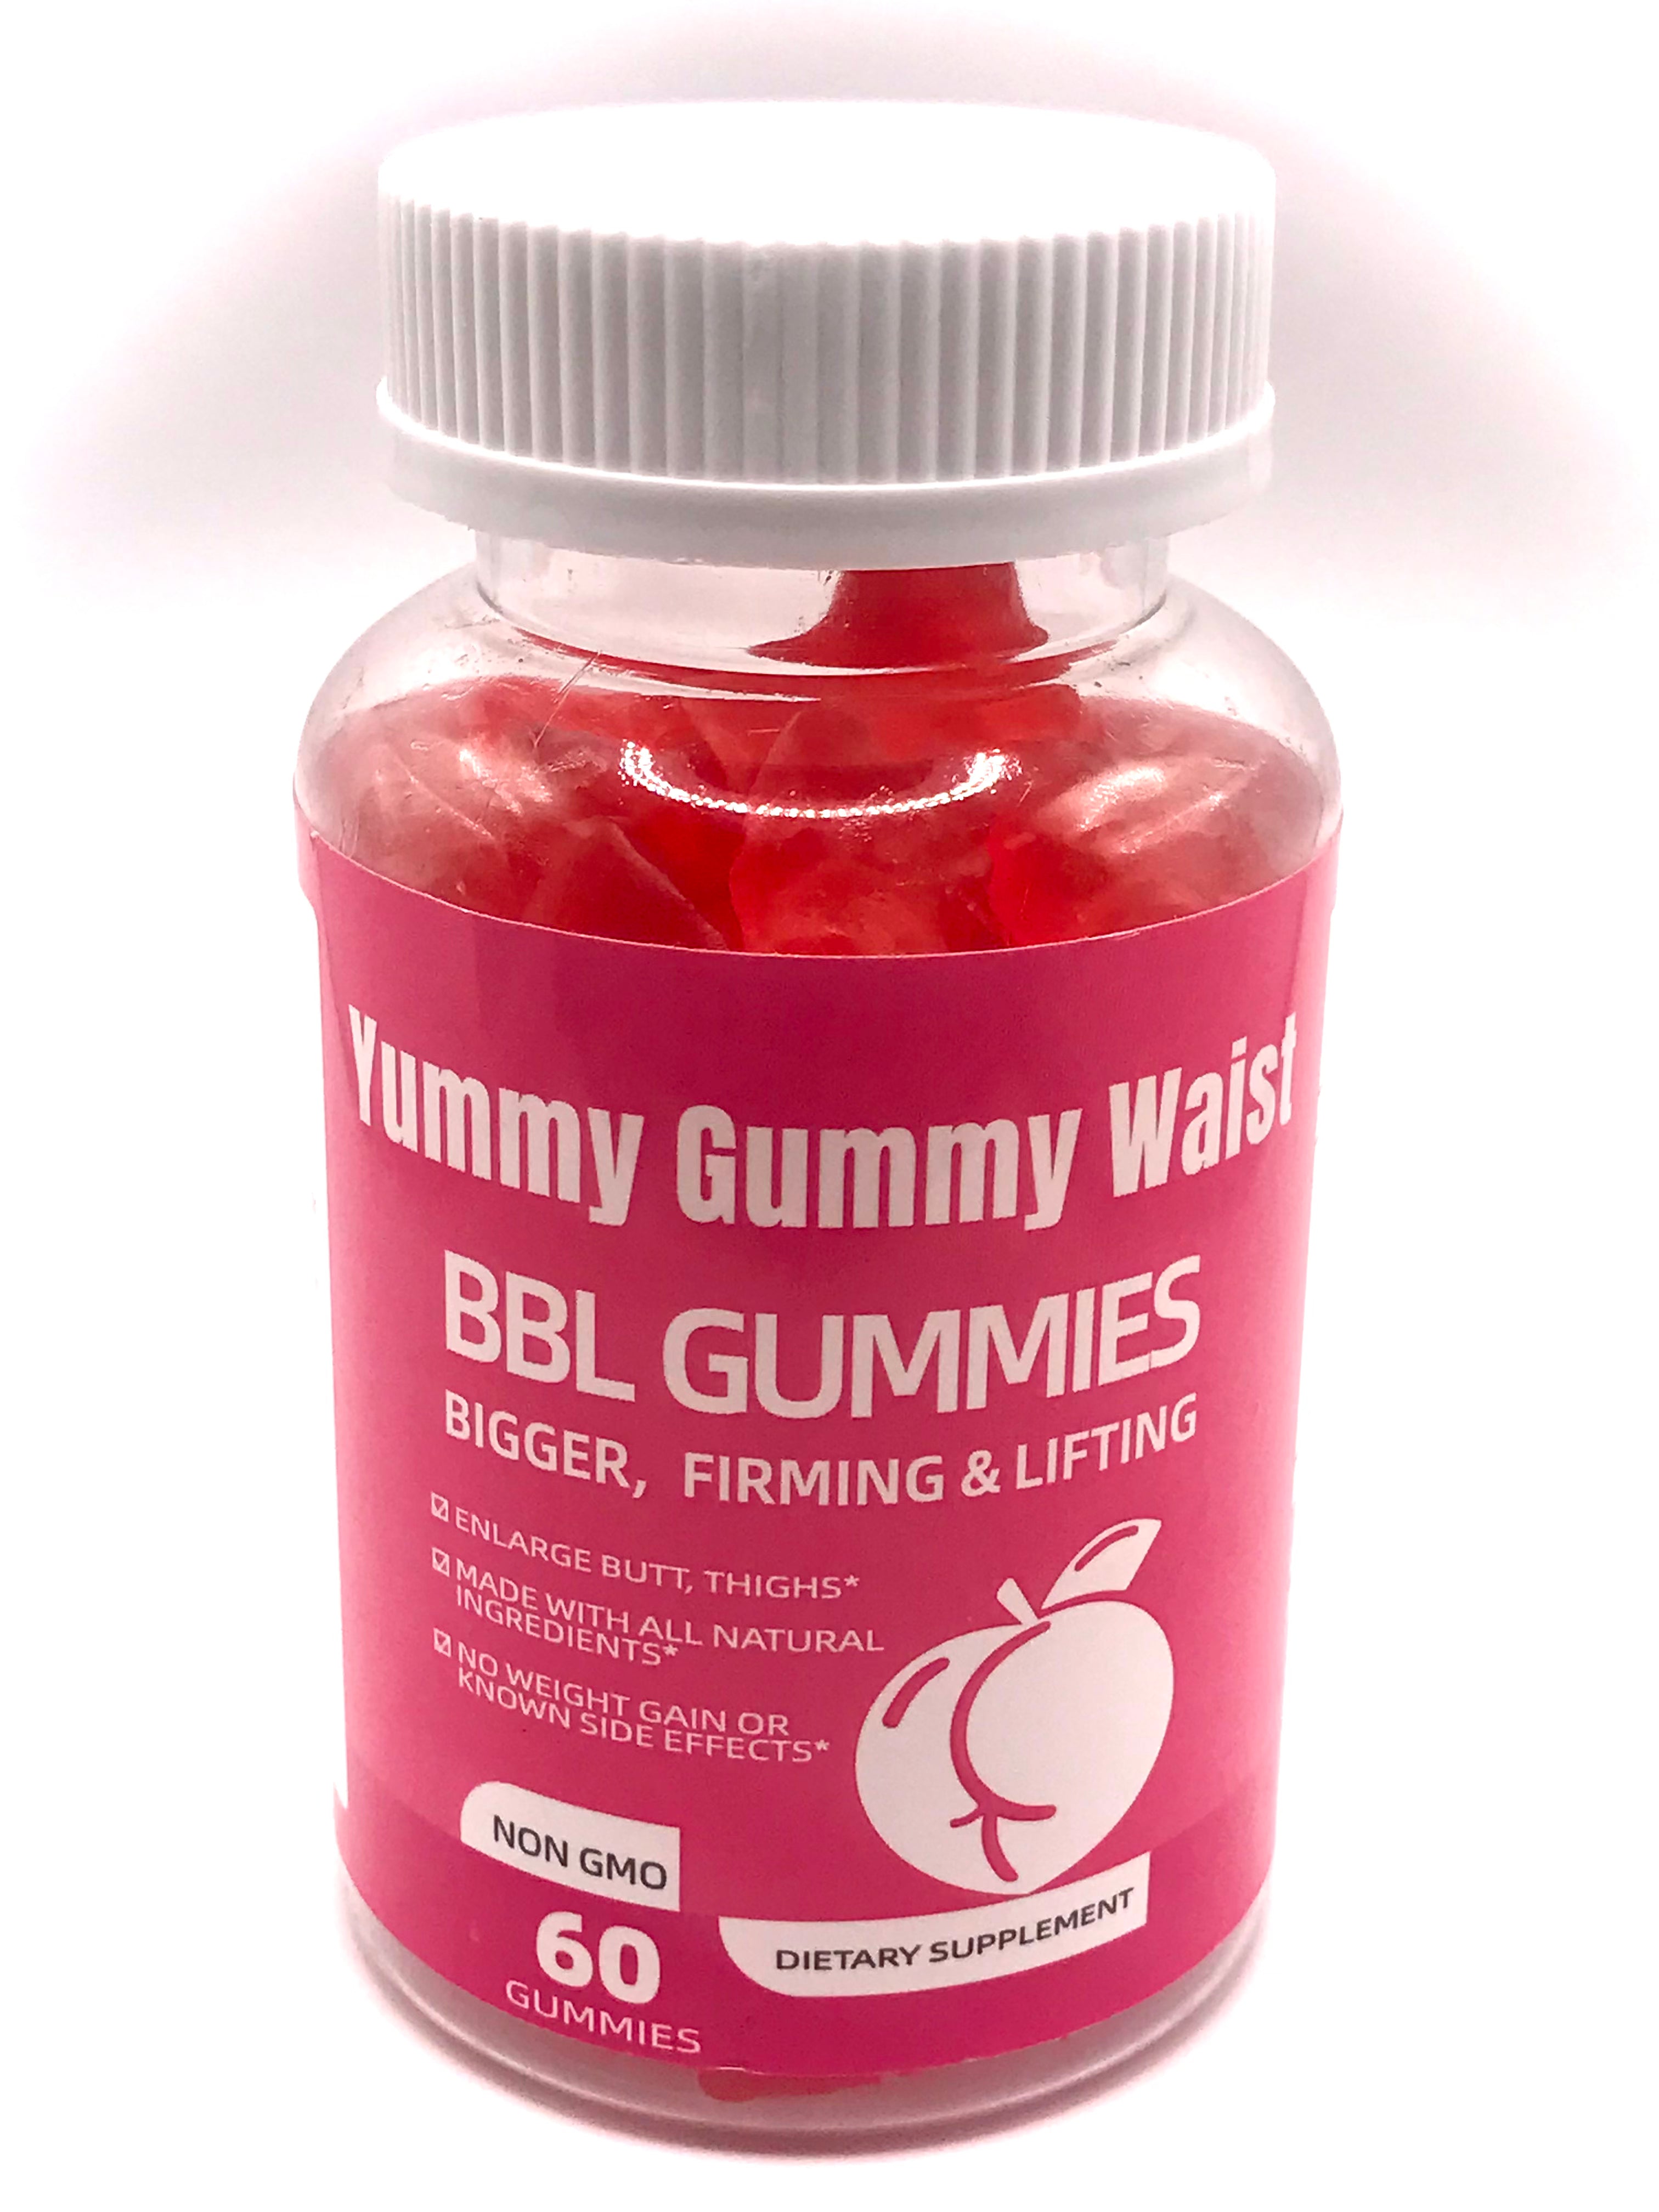 BBL Gummies - Yummy Gummy Waist